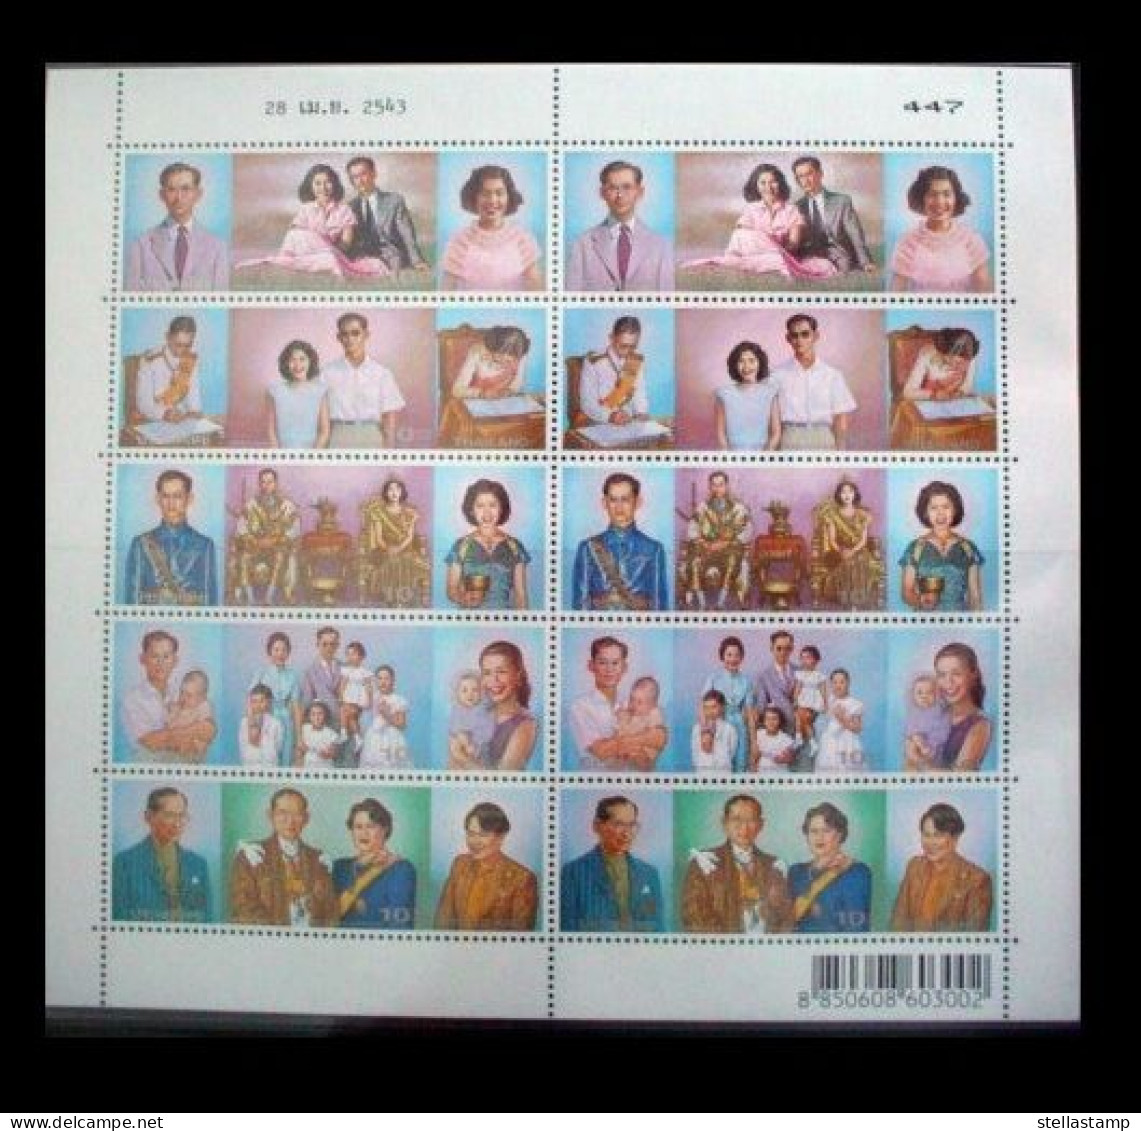 Thailand Stamp FS 2000 Royal Golden Wedding - Thailand